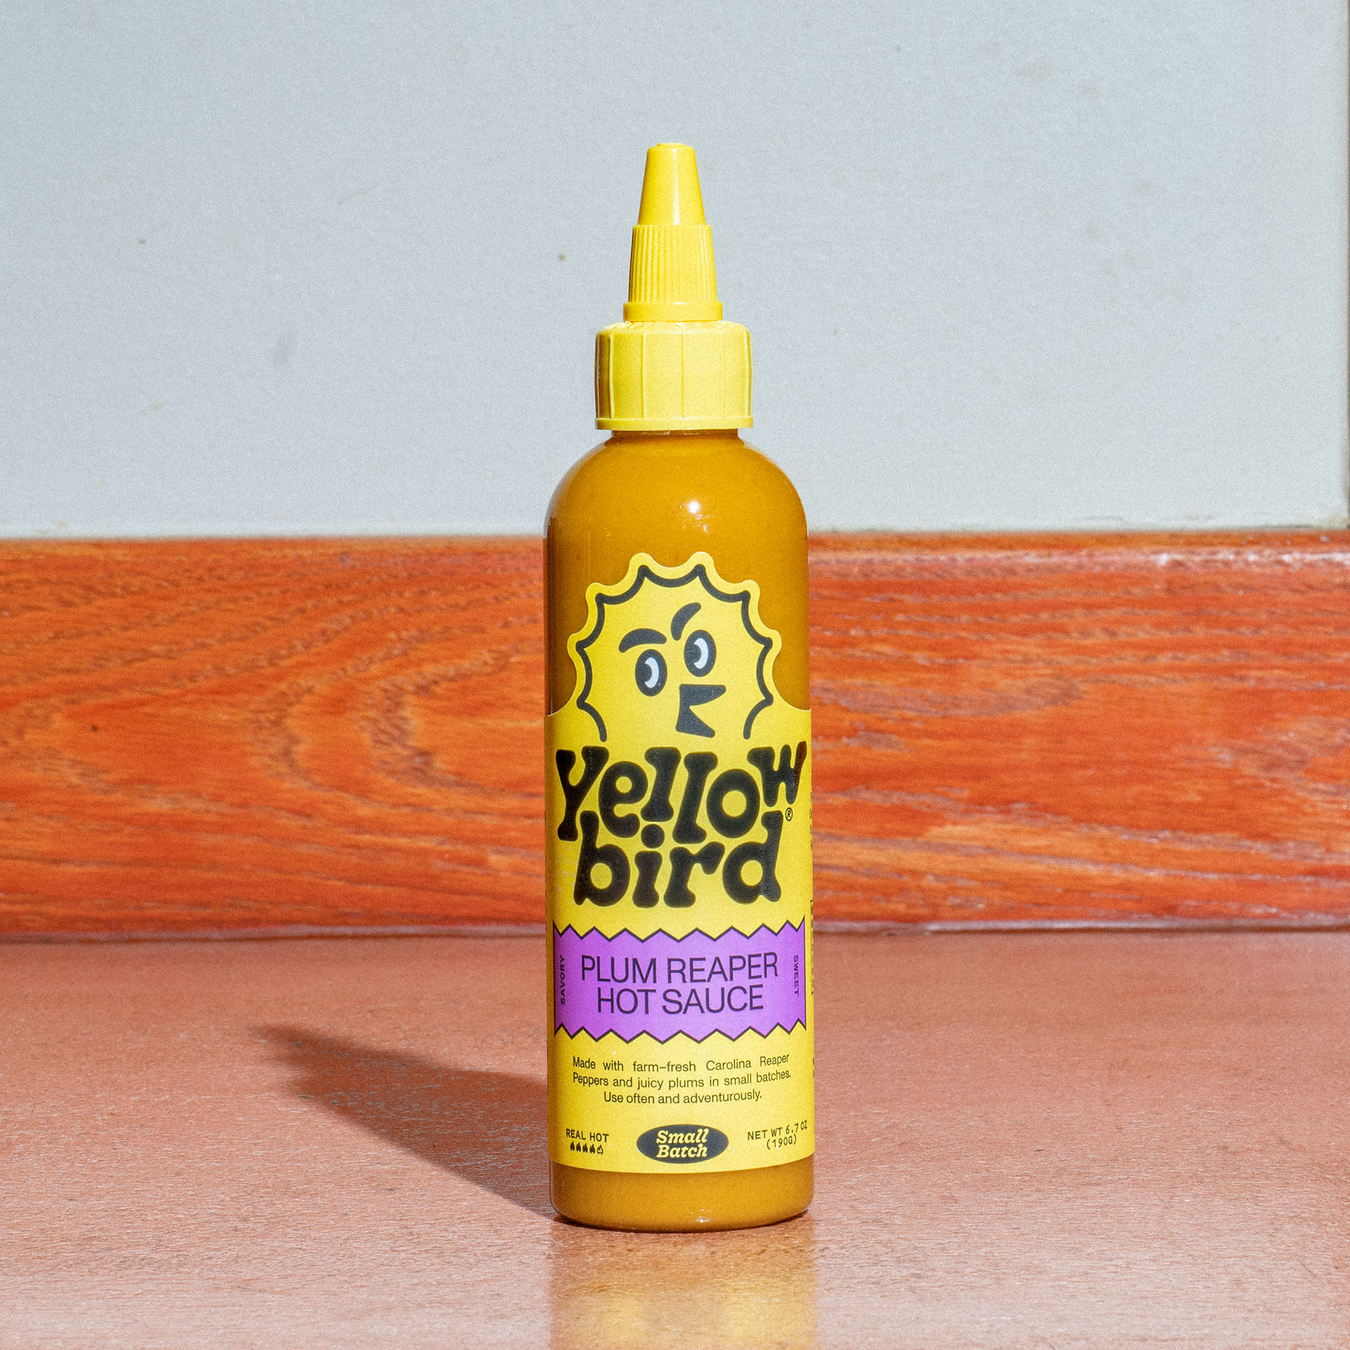 Yellowbird Plum Reaper Hot Sauce Small-Batch